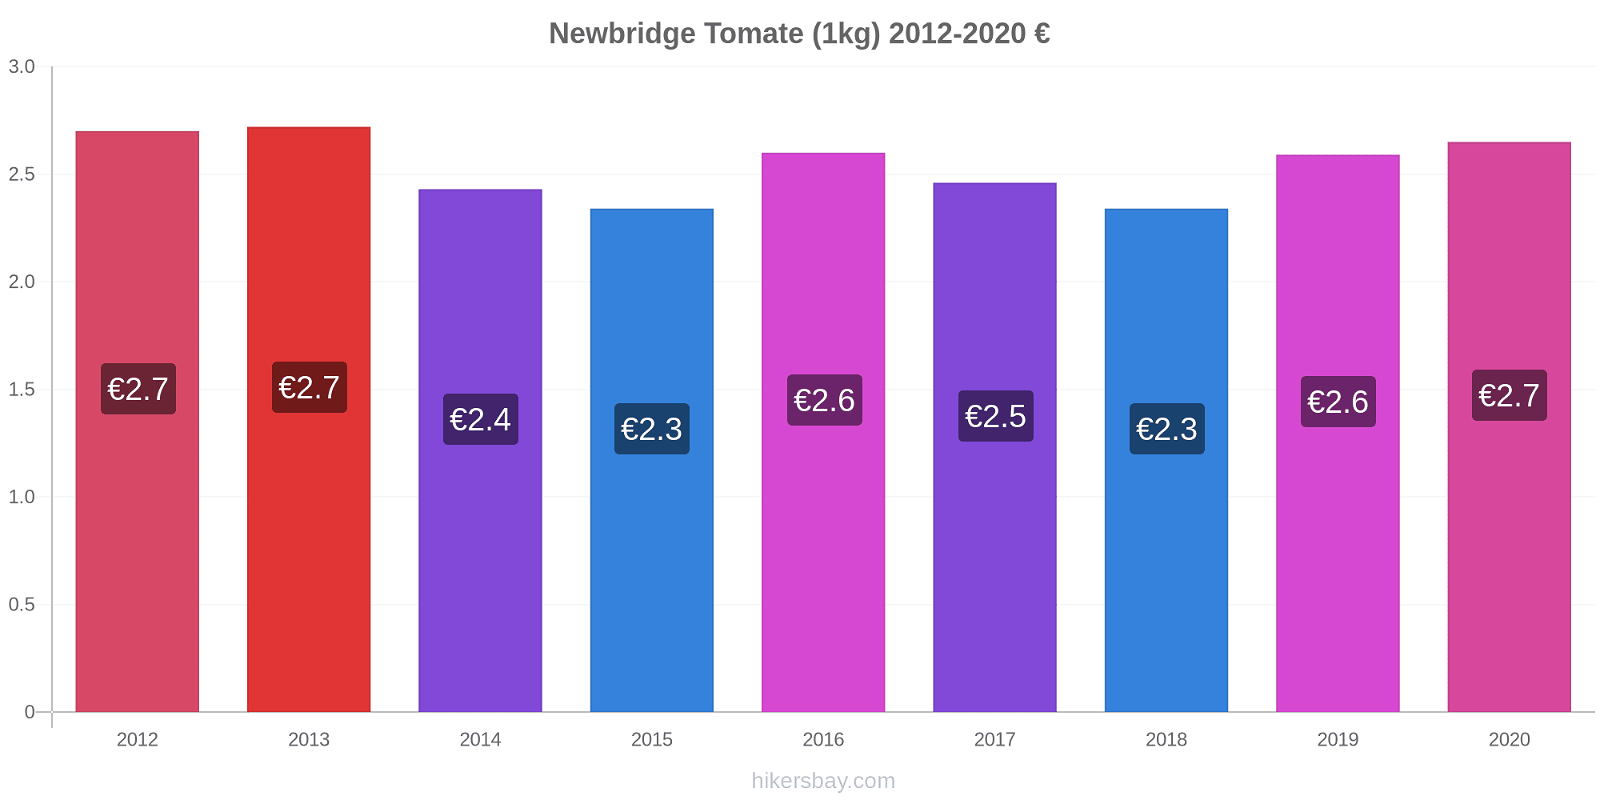 Newbridge cambios de precios Tomate (1kg) hikersbay.com